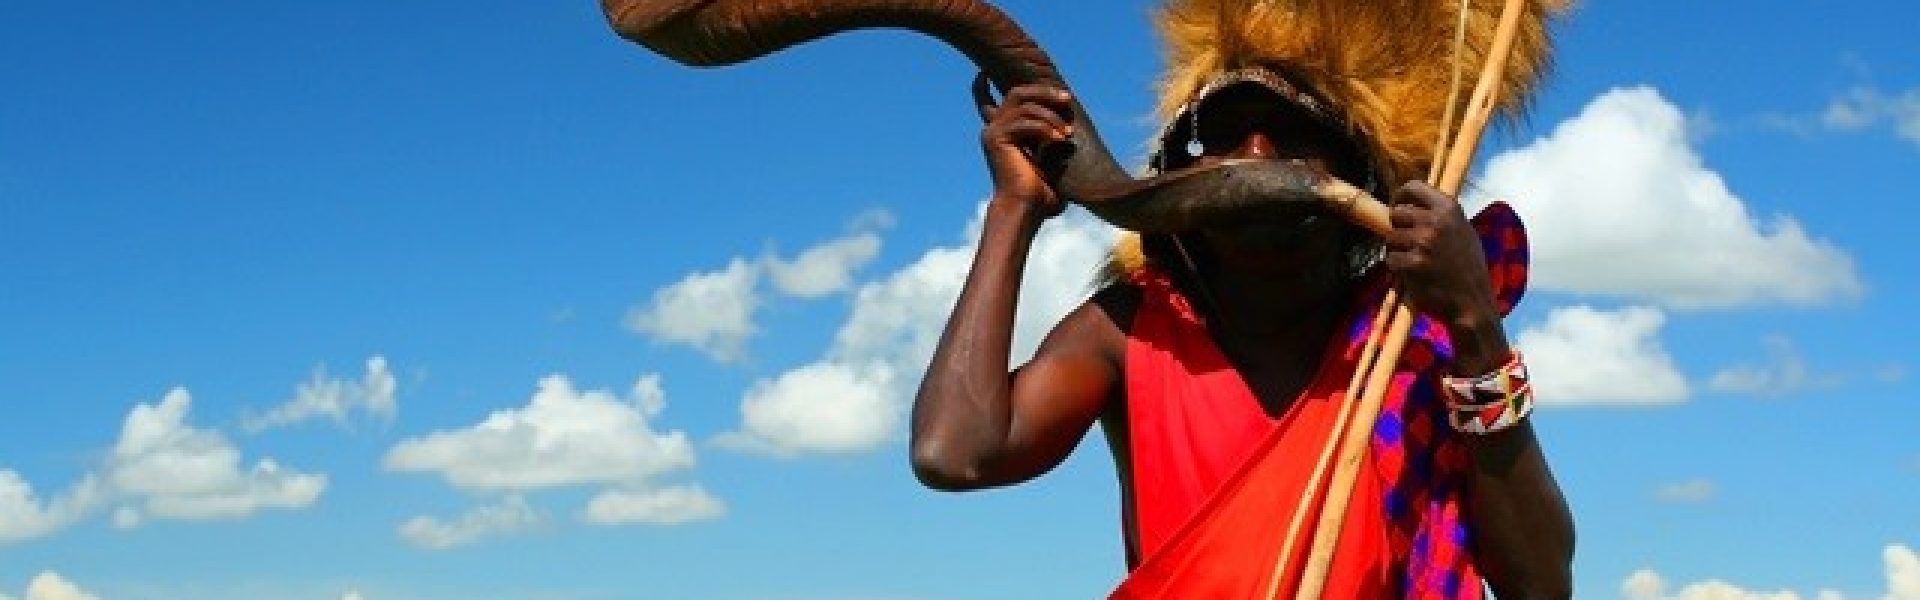 Massai-Krieger, der traditionelles Horn spielt. Afrika. Kenia. Masai Mara Das fesselnde Bild zeigt einen mutigen Massai-Krieger aus Kenia, der ein traditionelles Horn spielt. Die farbenfrohe Kleidung des Kriegers und seine stolze Haltung verleihen dem Bild eine authentische Atmosphäre. Das Horn, das er spielt, erzeugt einen kraftvollen Klang, der die Schönheit der afrikanischen Kultur widerspiegelt. Dieses Bild lädt den Betrachter ein, in die faszinierende Welt der Massai einzutauchen und die lebendige Kultur und Traditionen dieses faszinierenden Volkes zu entdecken. Erleben Sie die kraftvolle Energie und die fesselnde Musik der Massai-Krieger inmitten der atemberaubenden Landschaft der Masai Mara.